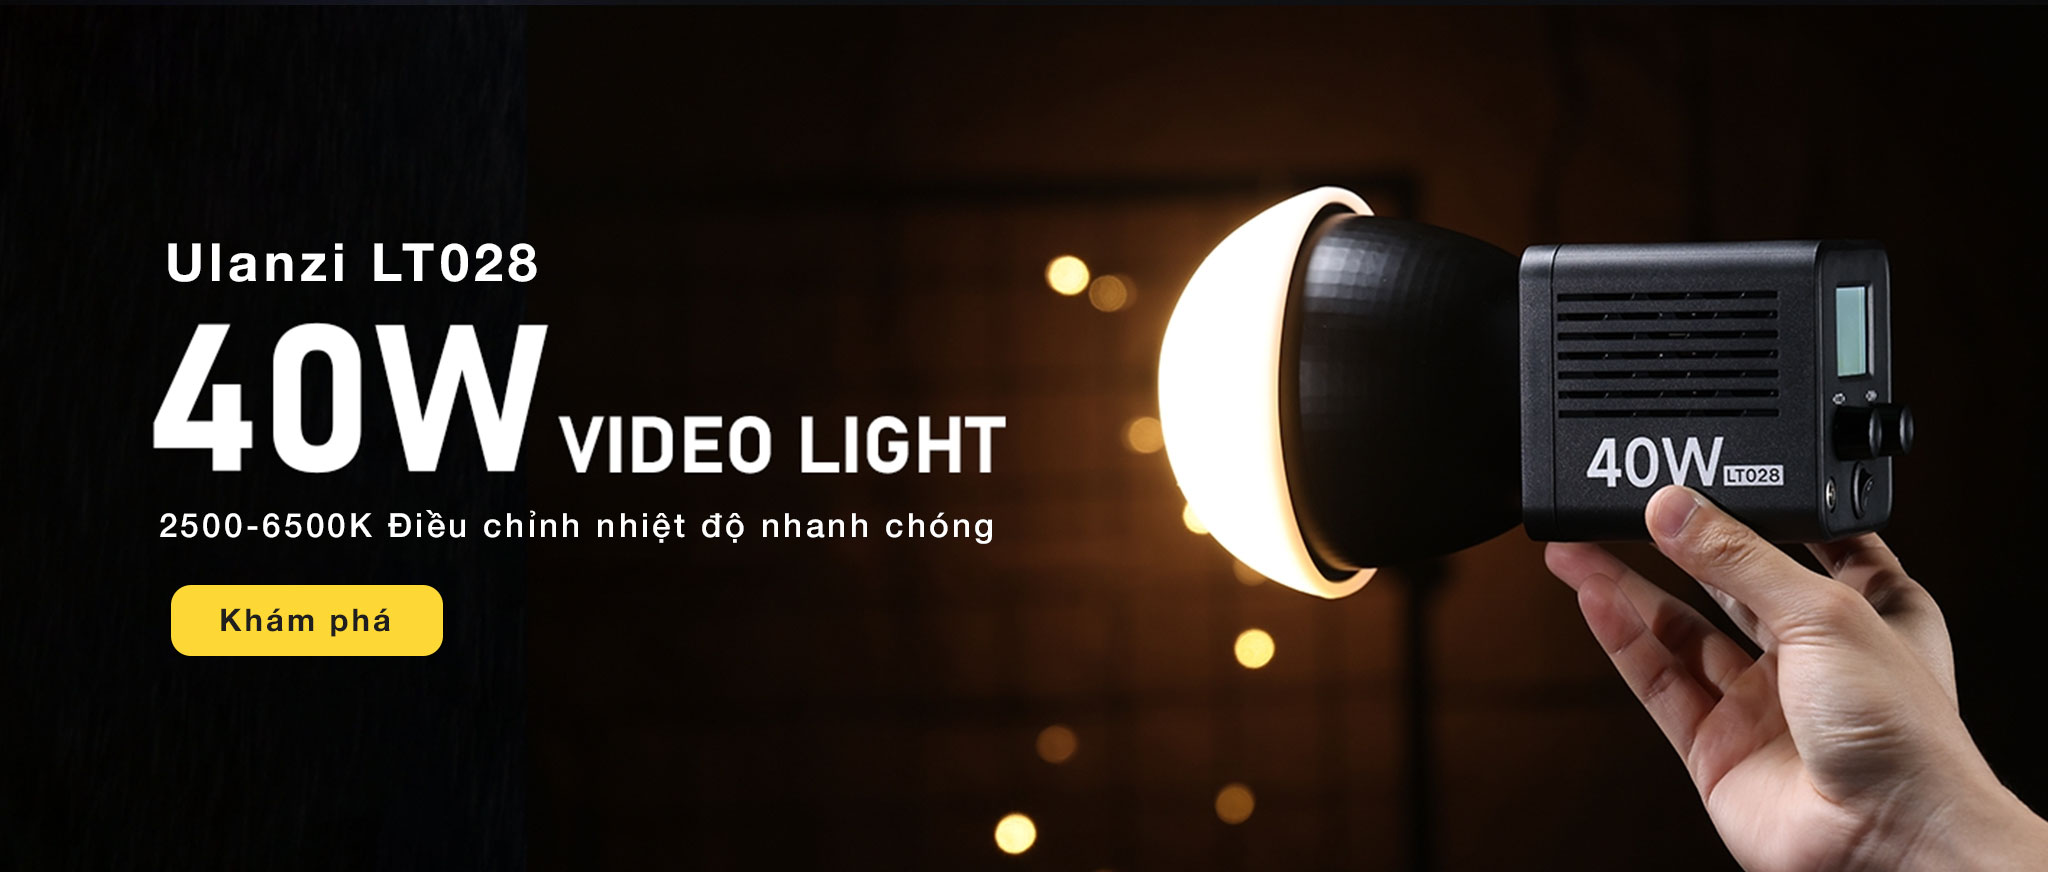 Mua Đèn sáng liên tục Studio Continuous Light chính hãng tại HCM